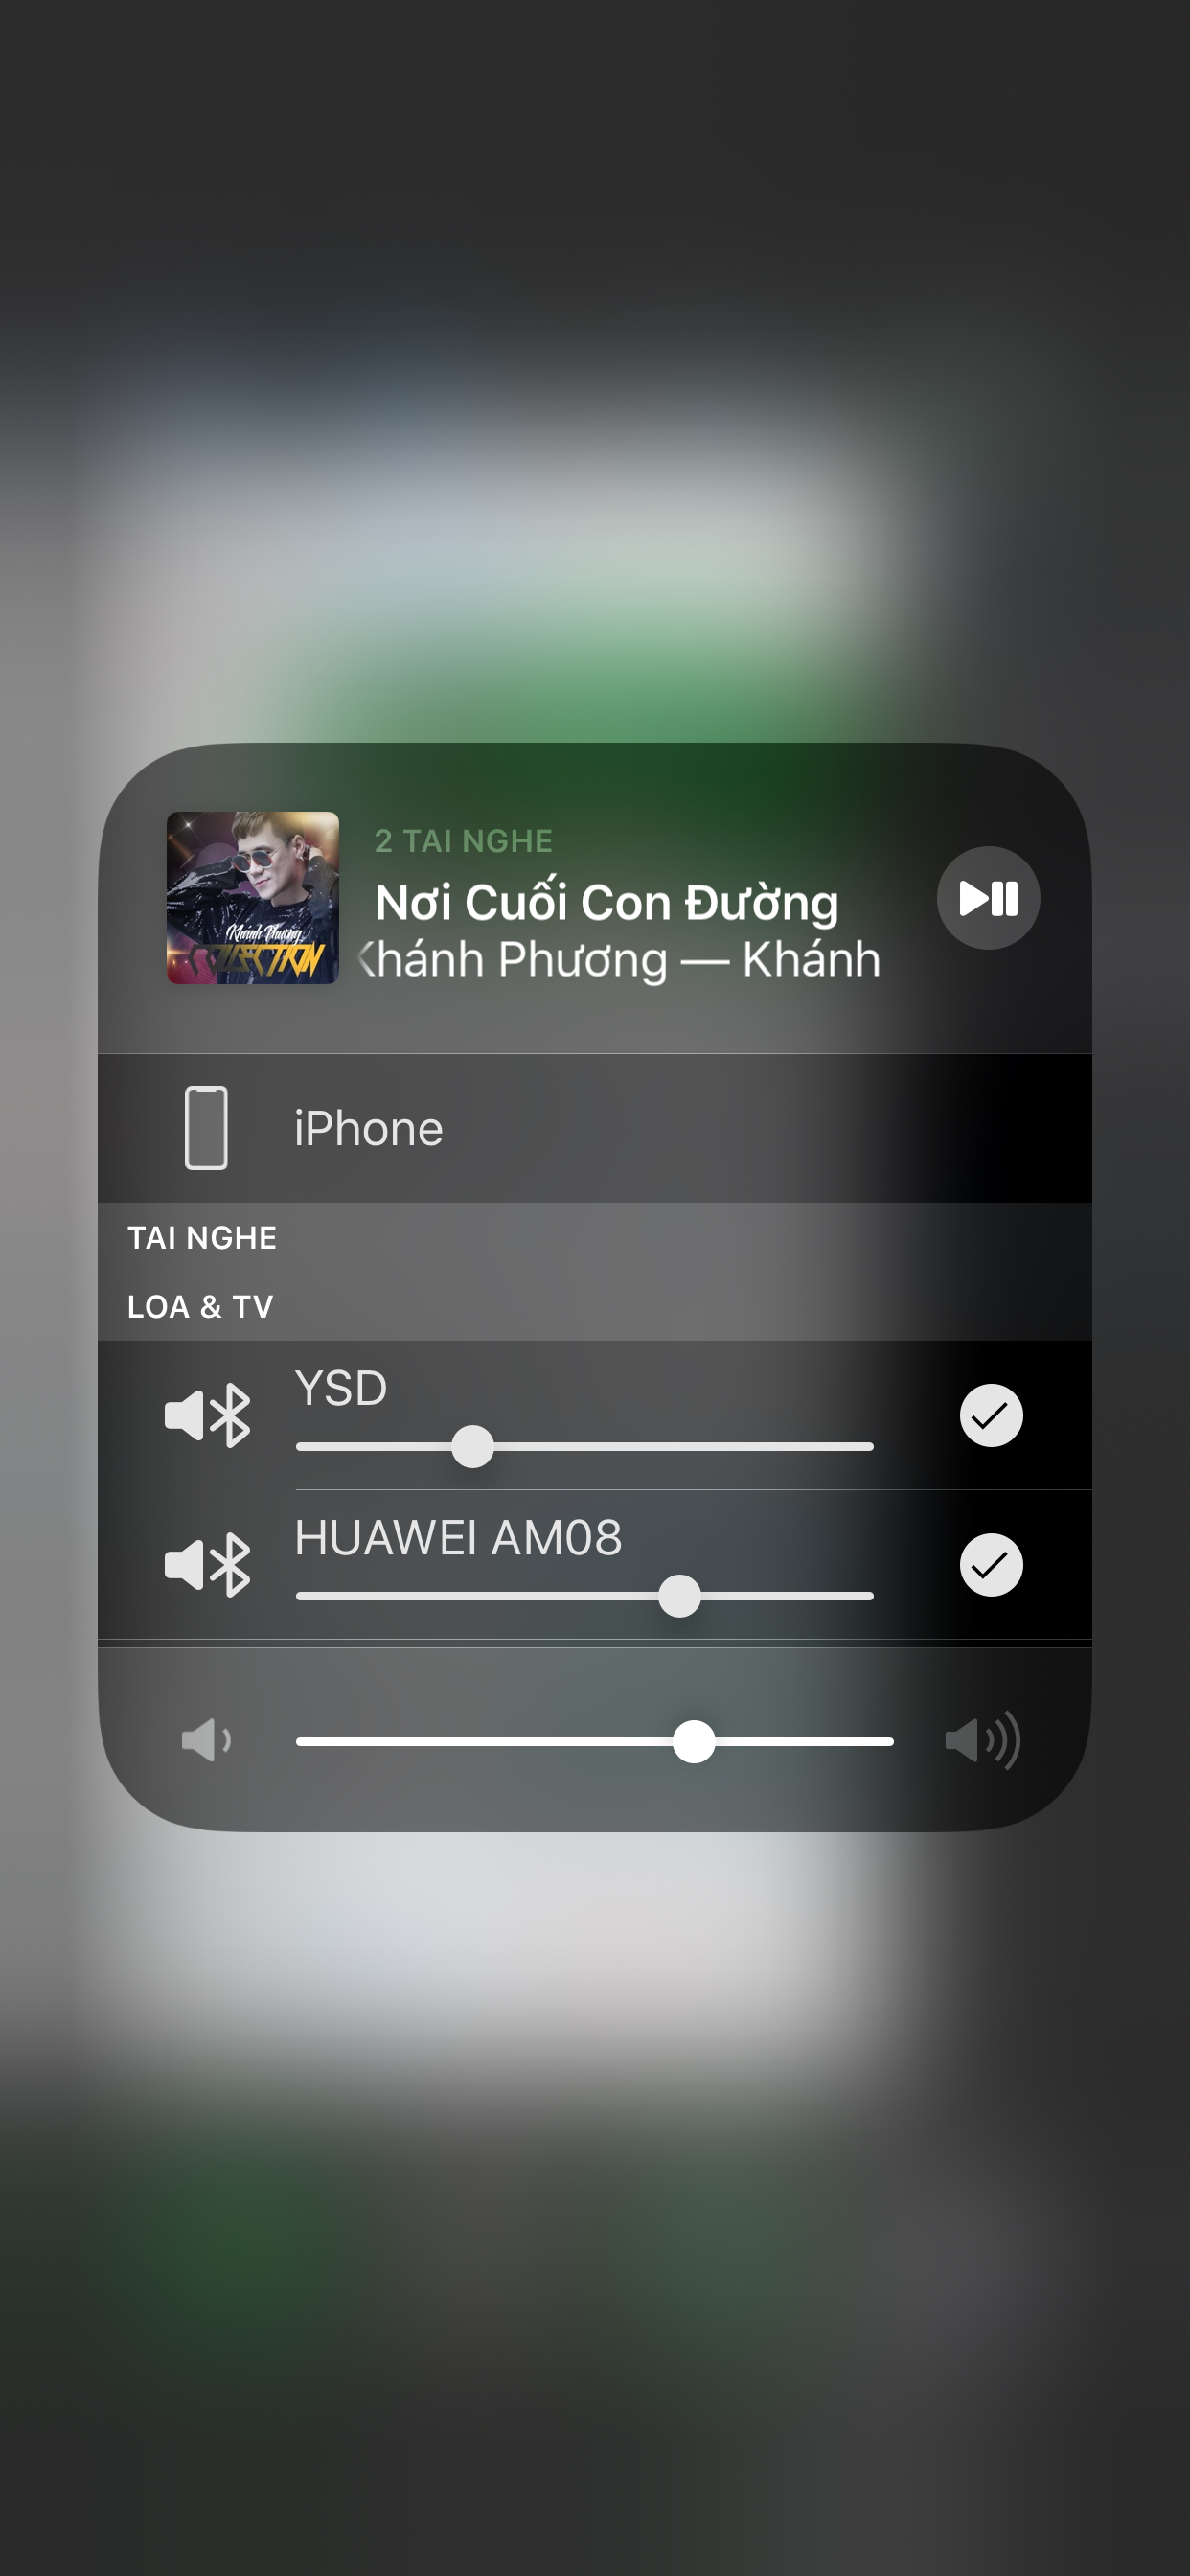 iOS 13 đã cho phép phát nhạc ra nhiều thiết bị, có ae nào thử chưa?